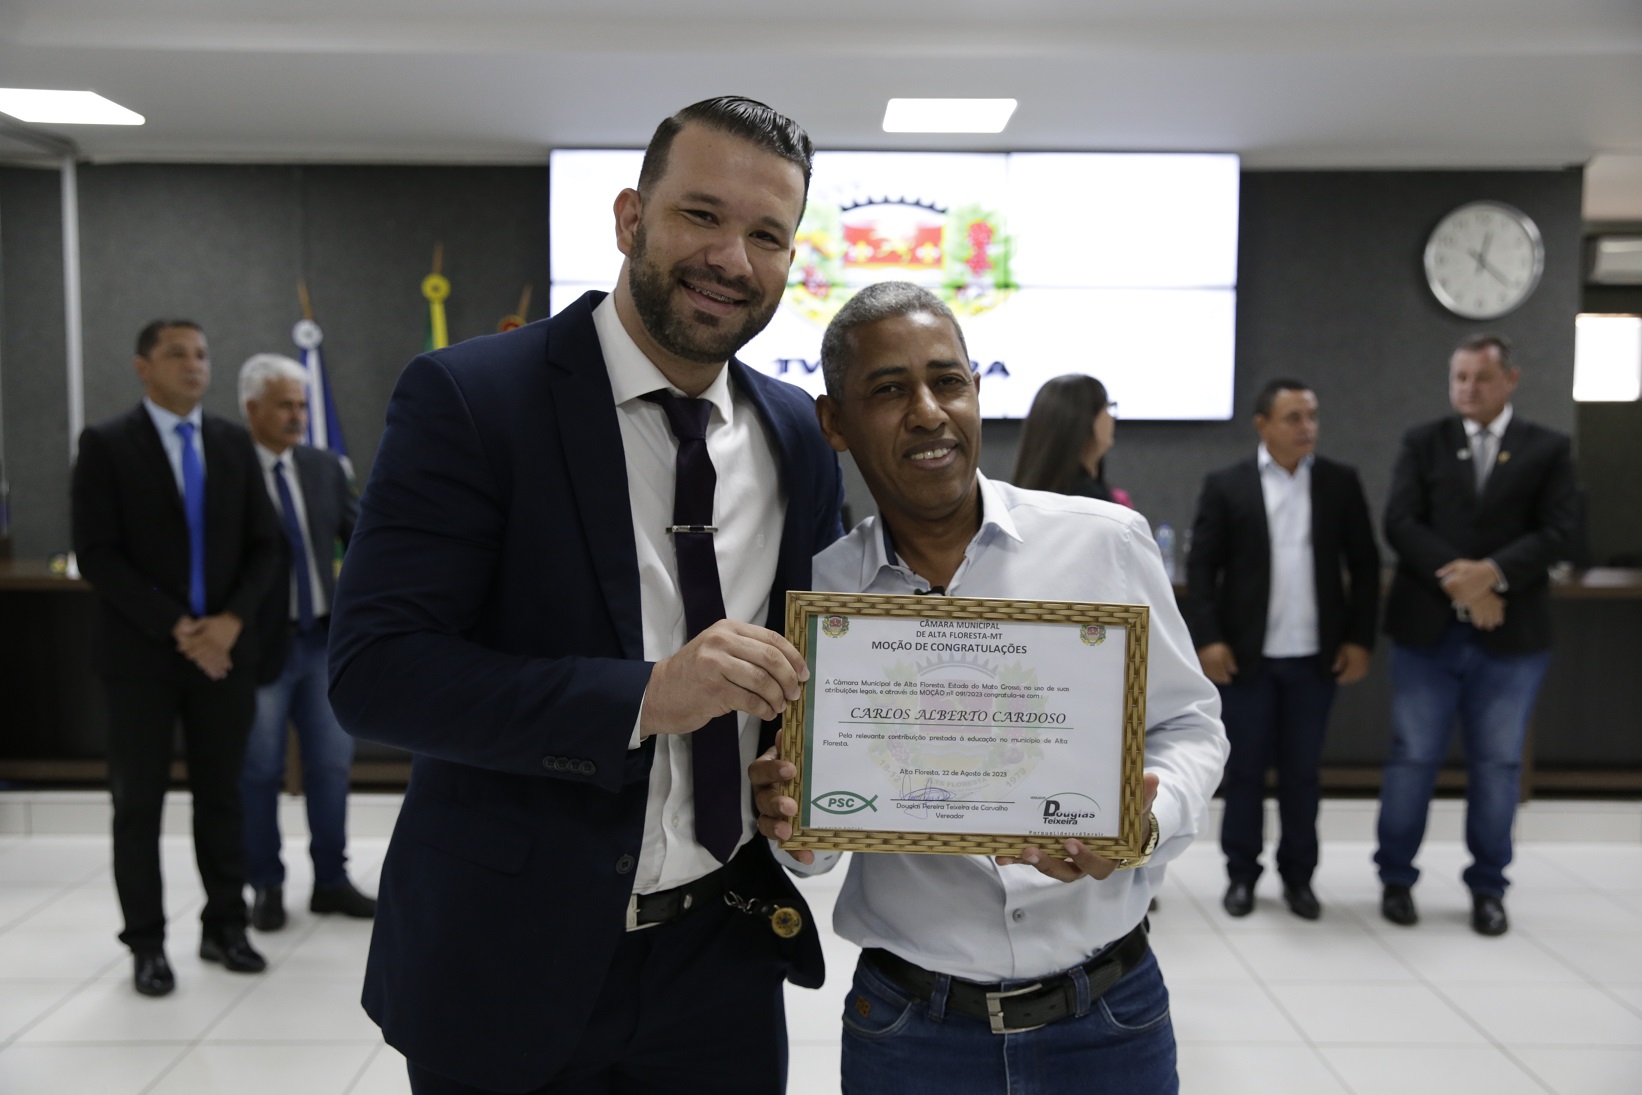 Professor Carlos Alberto Cardoso recebe Moção de Congratulações da Câmara Municipal